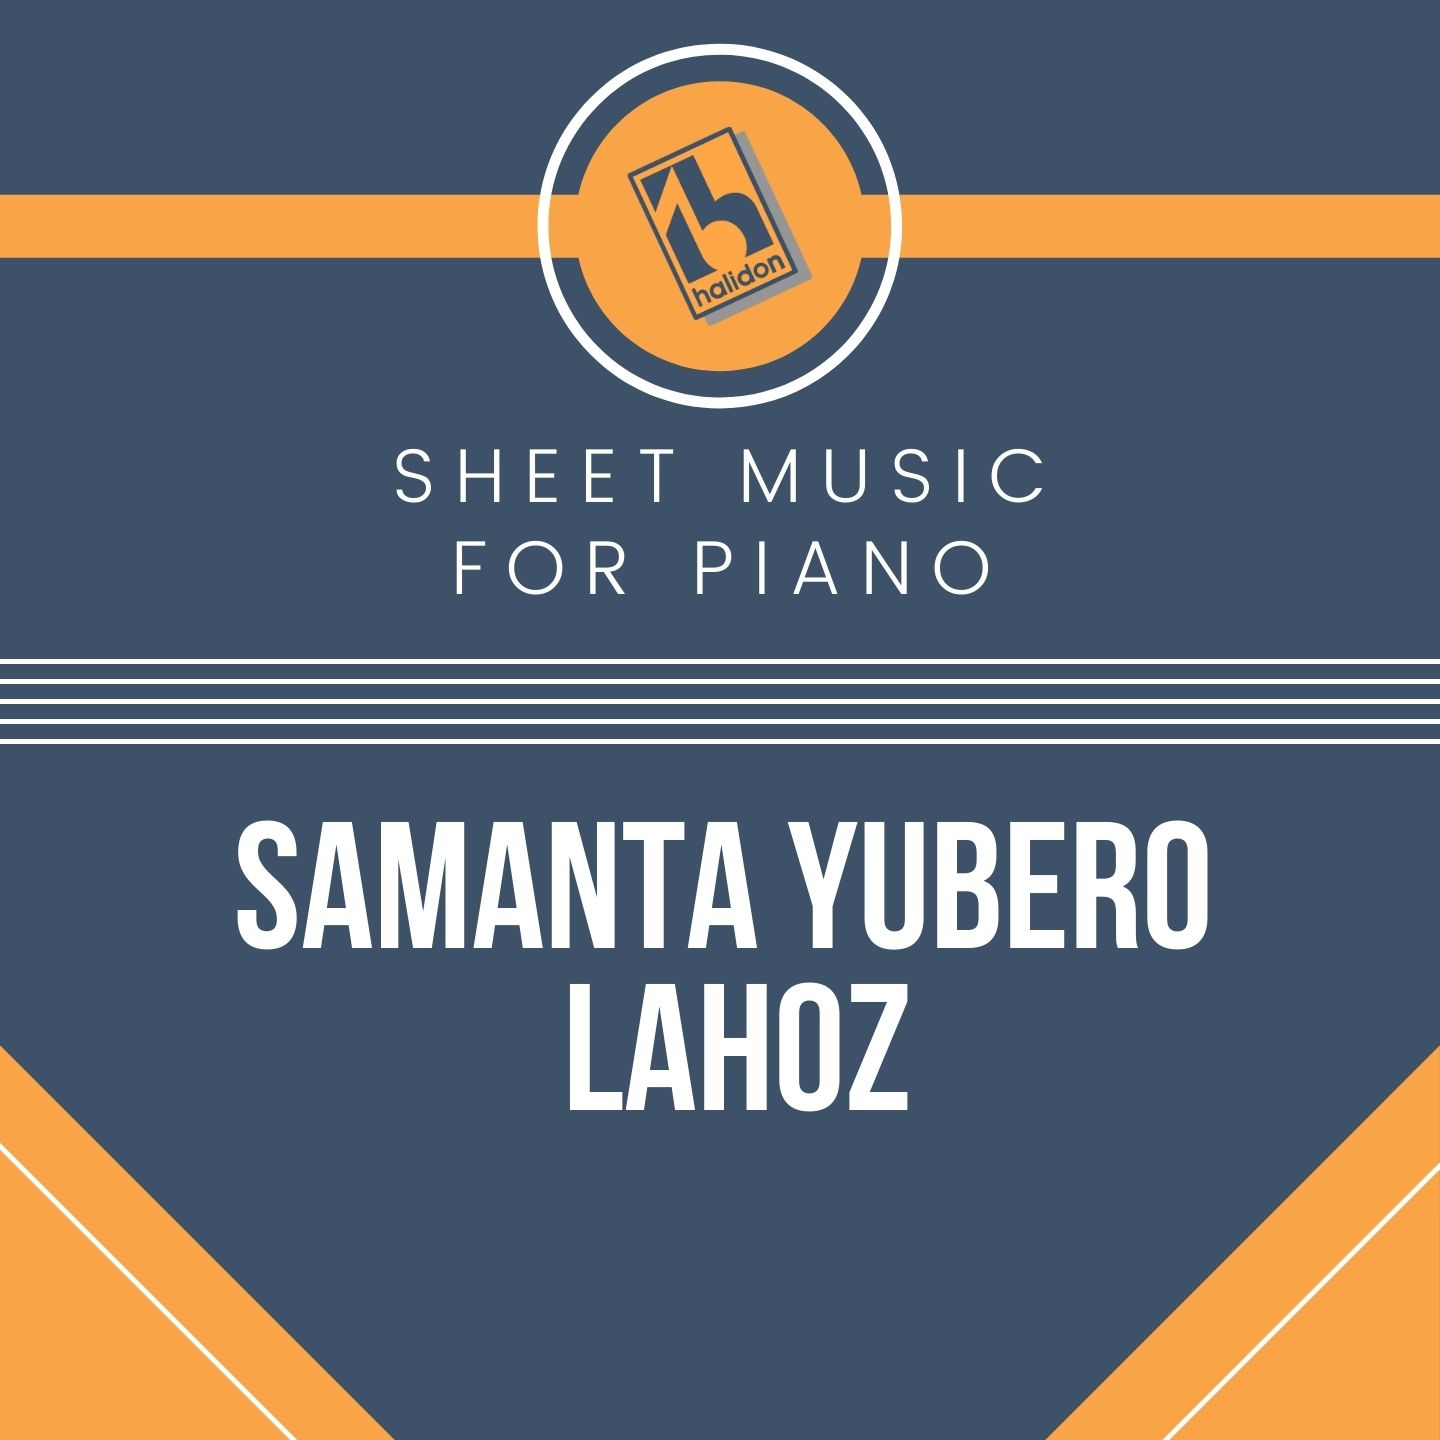 Samanta Yubero Lahoz - Piano Sheet Music